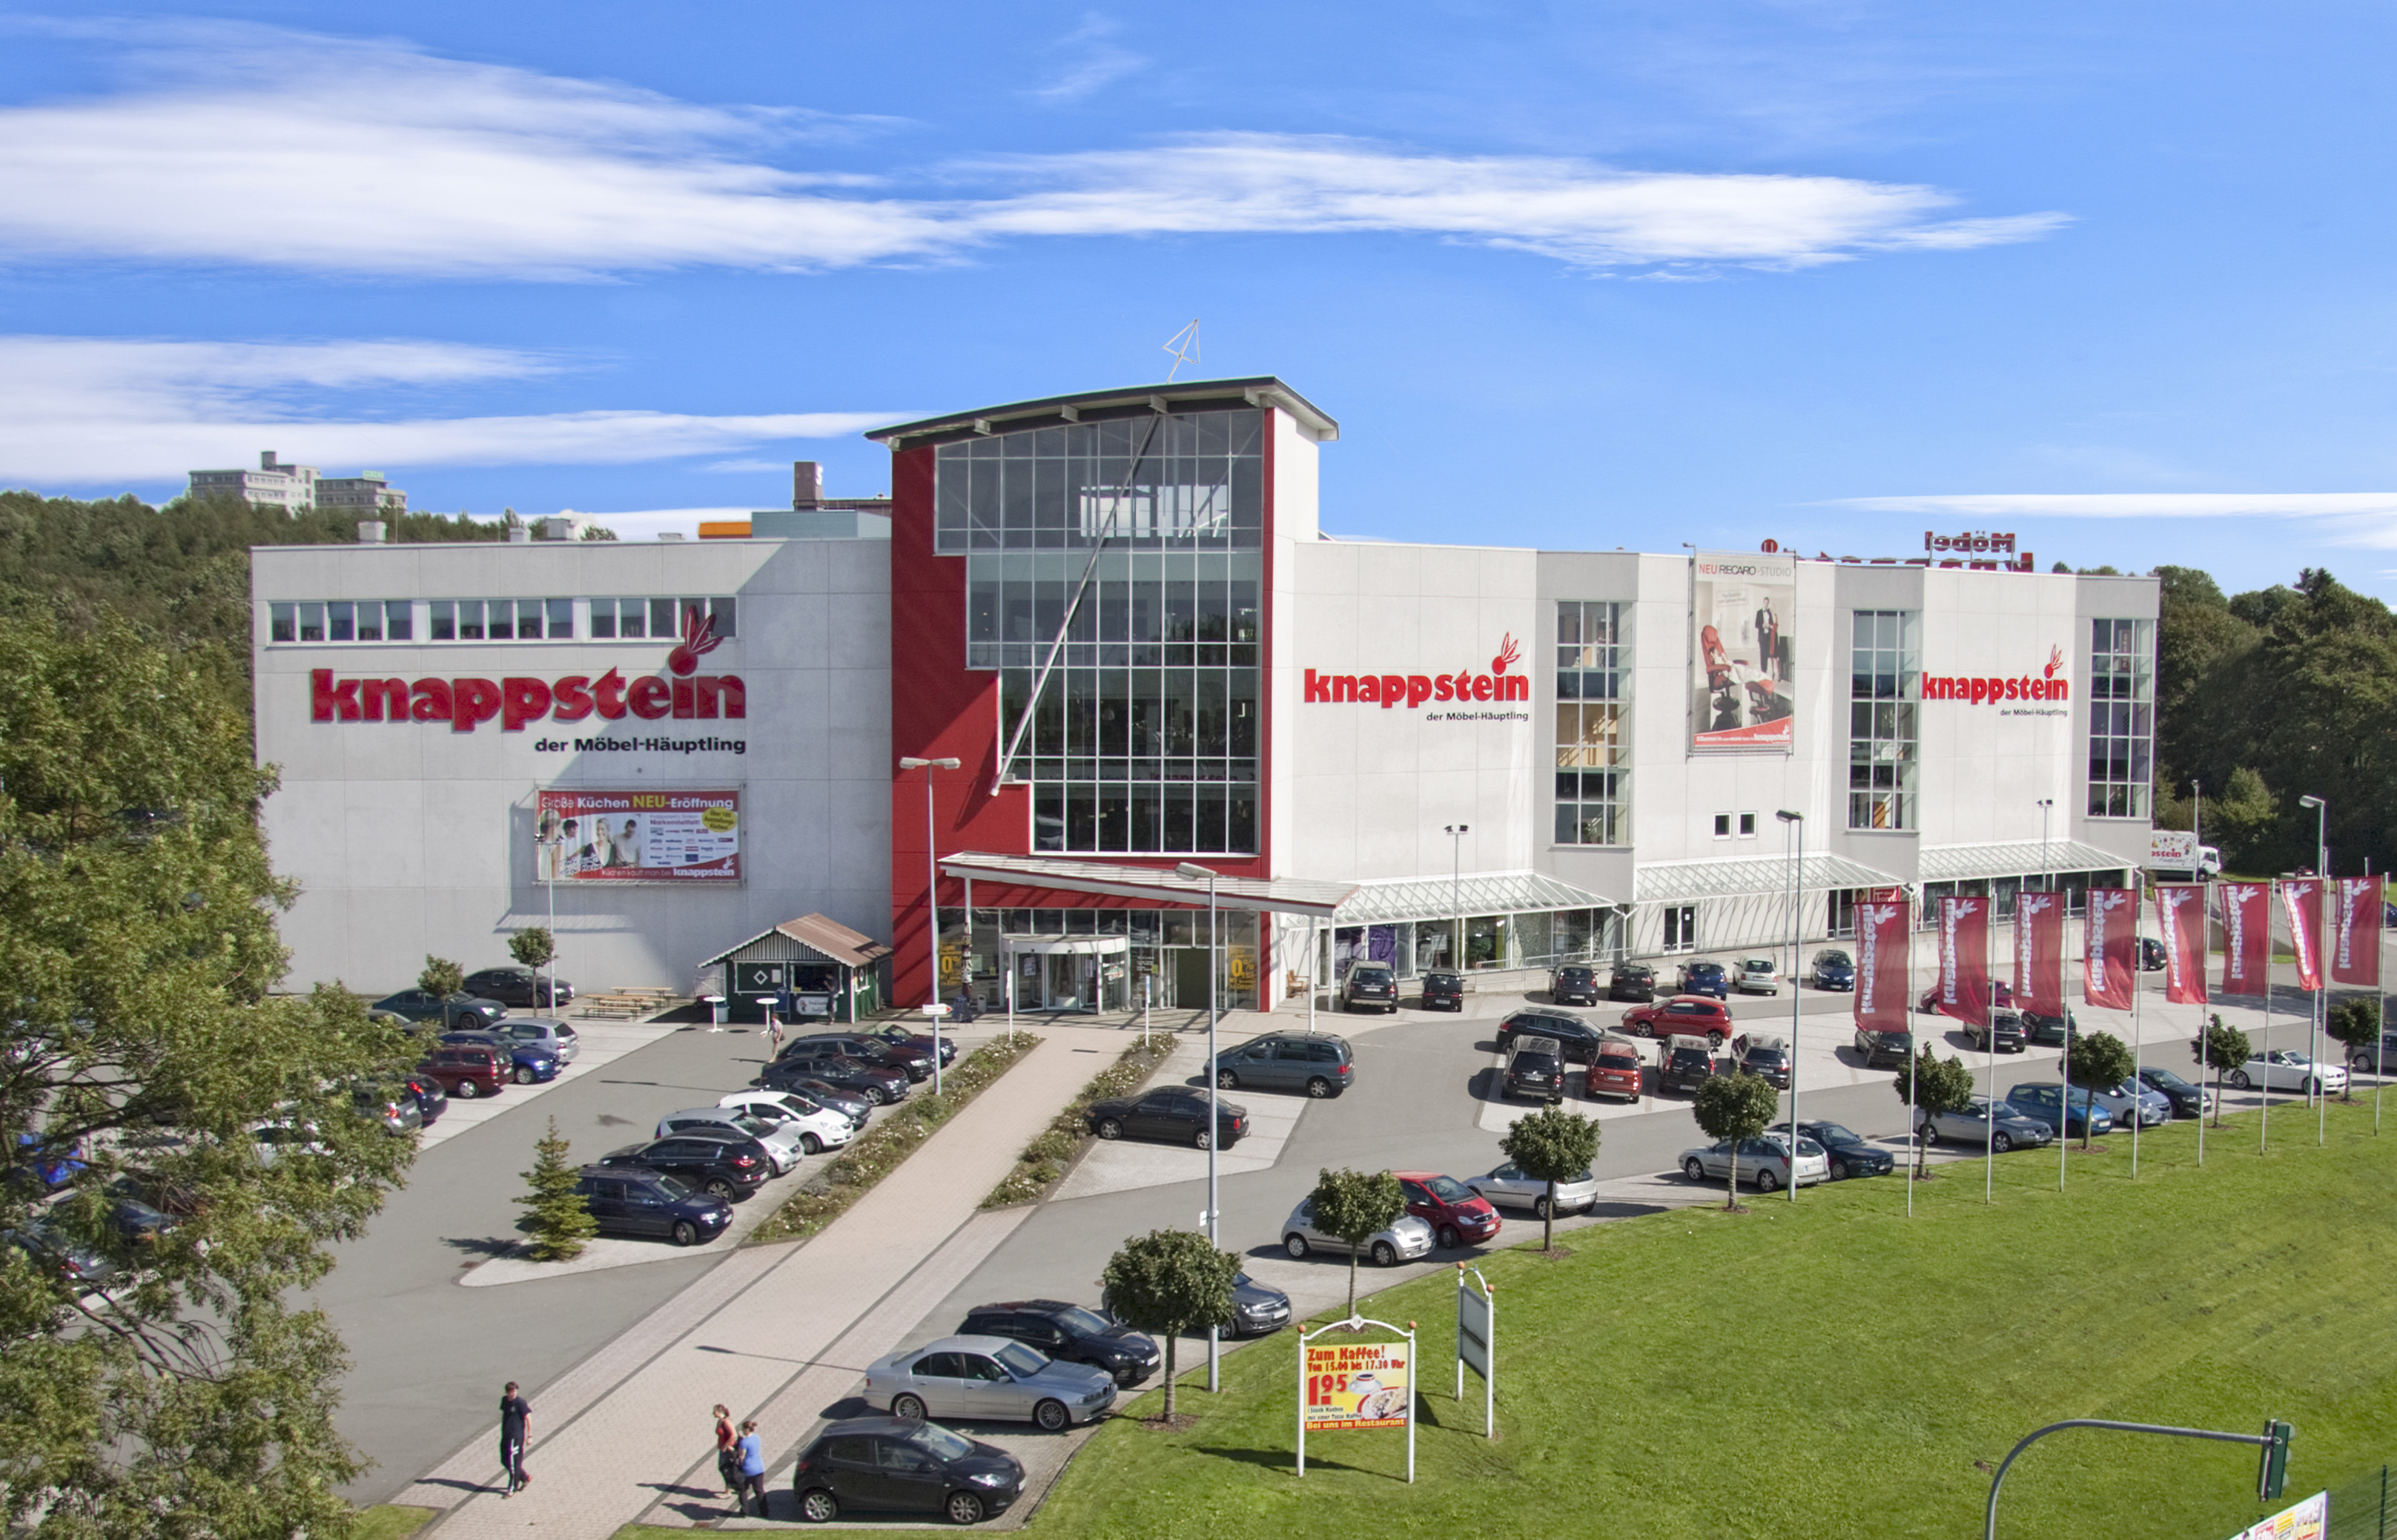 Möbel Knappstein GmbH & Co. KG